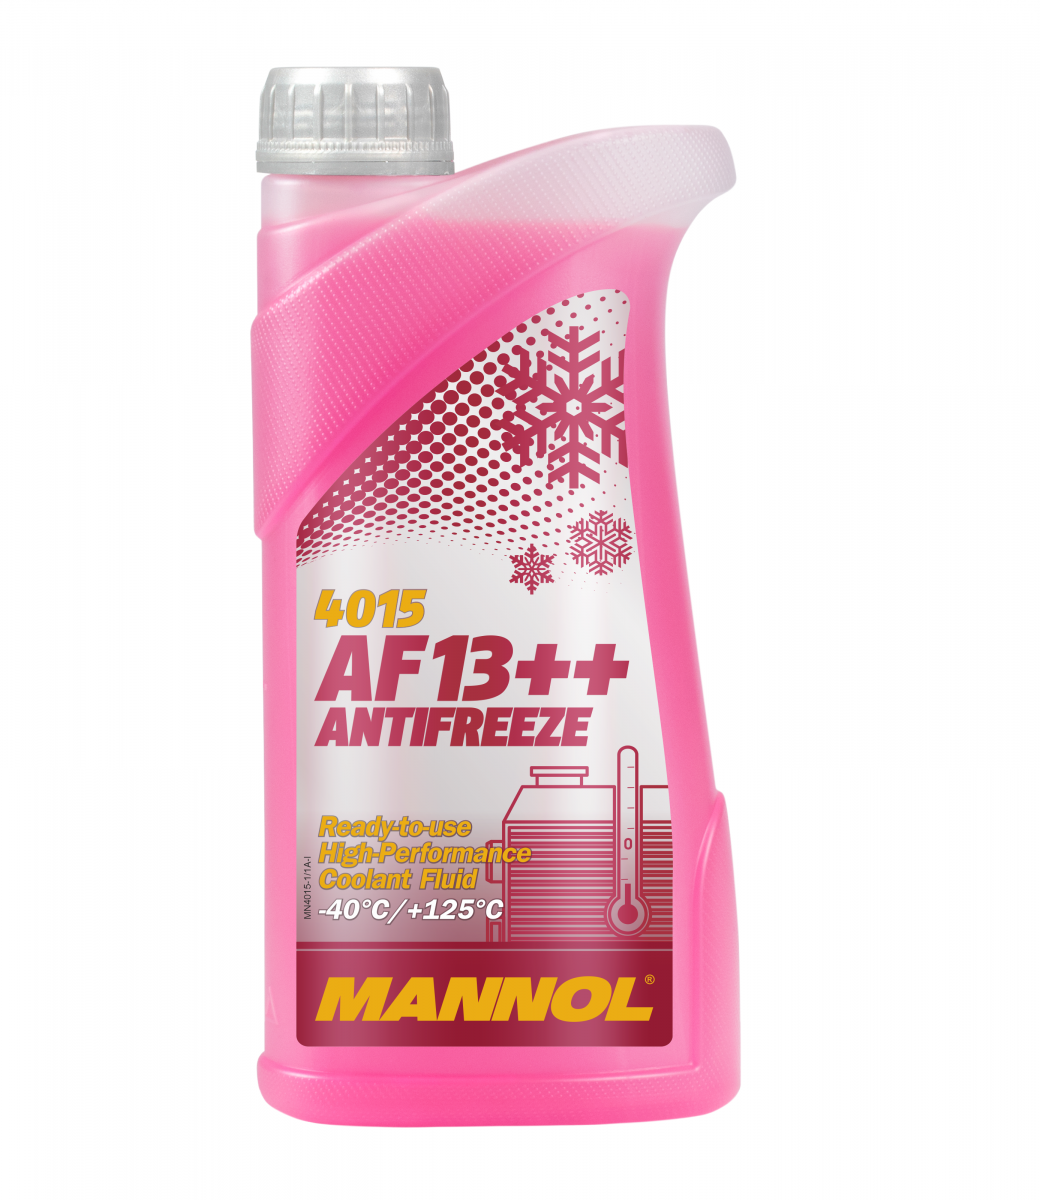 Mannol 4015 Kühlerfrostschutz Antifreeze AF13++ High Performance -40 Fertigmischung 1 Liter